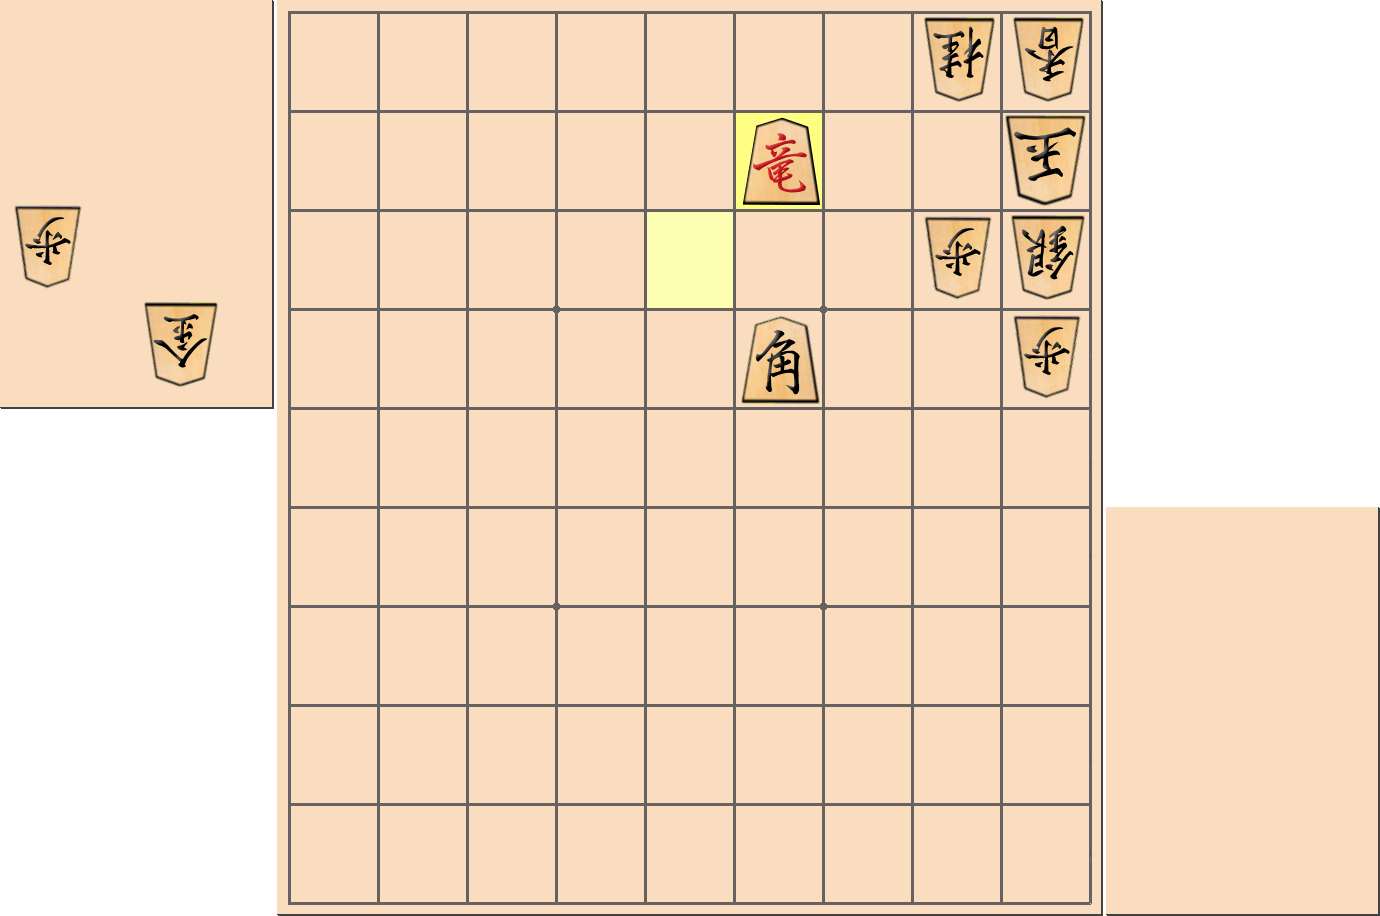 【将棋用語】タダの合駒が「無駄合い」とならない部分図2